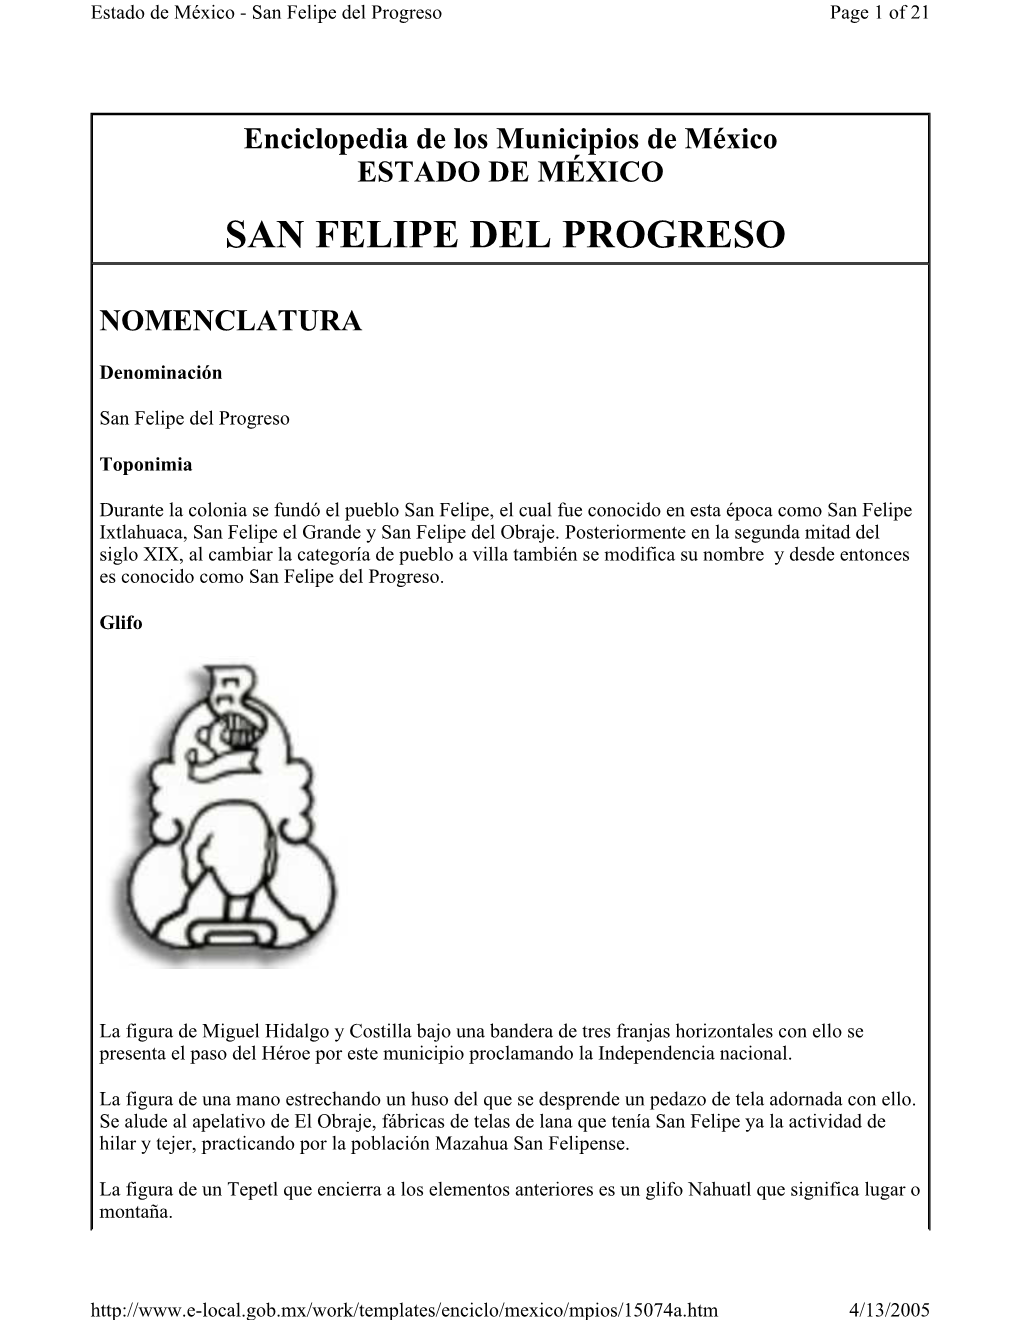 San Felipe Del Progreso Page 1 of 21